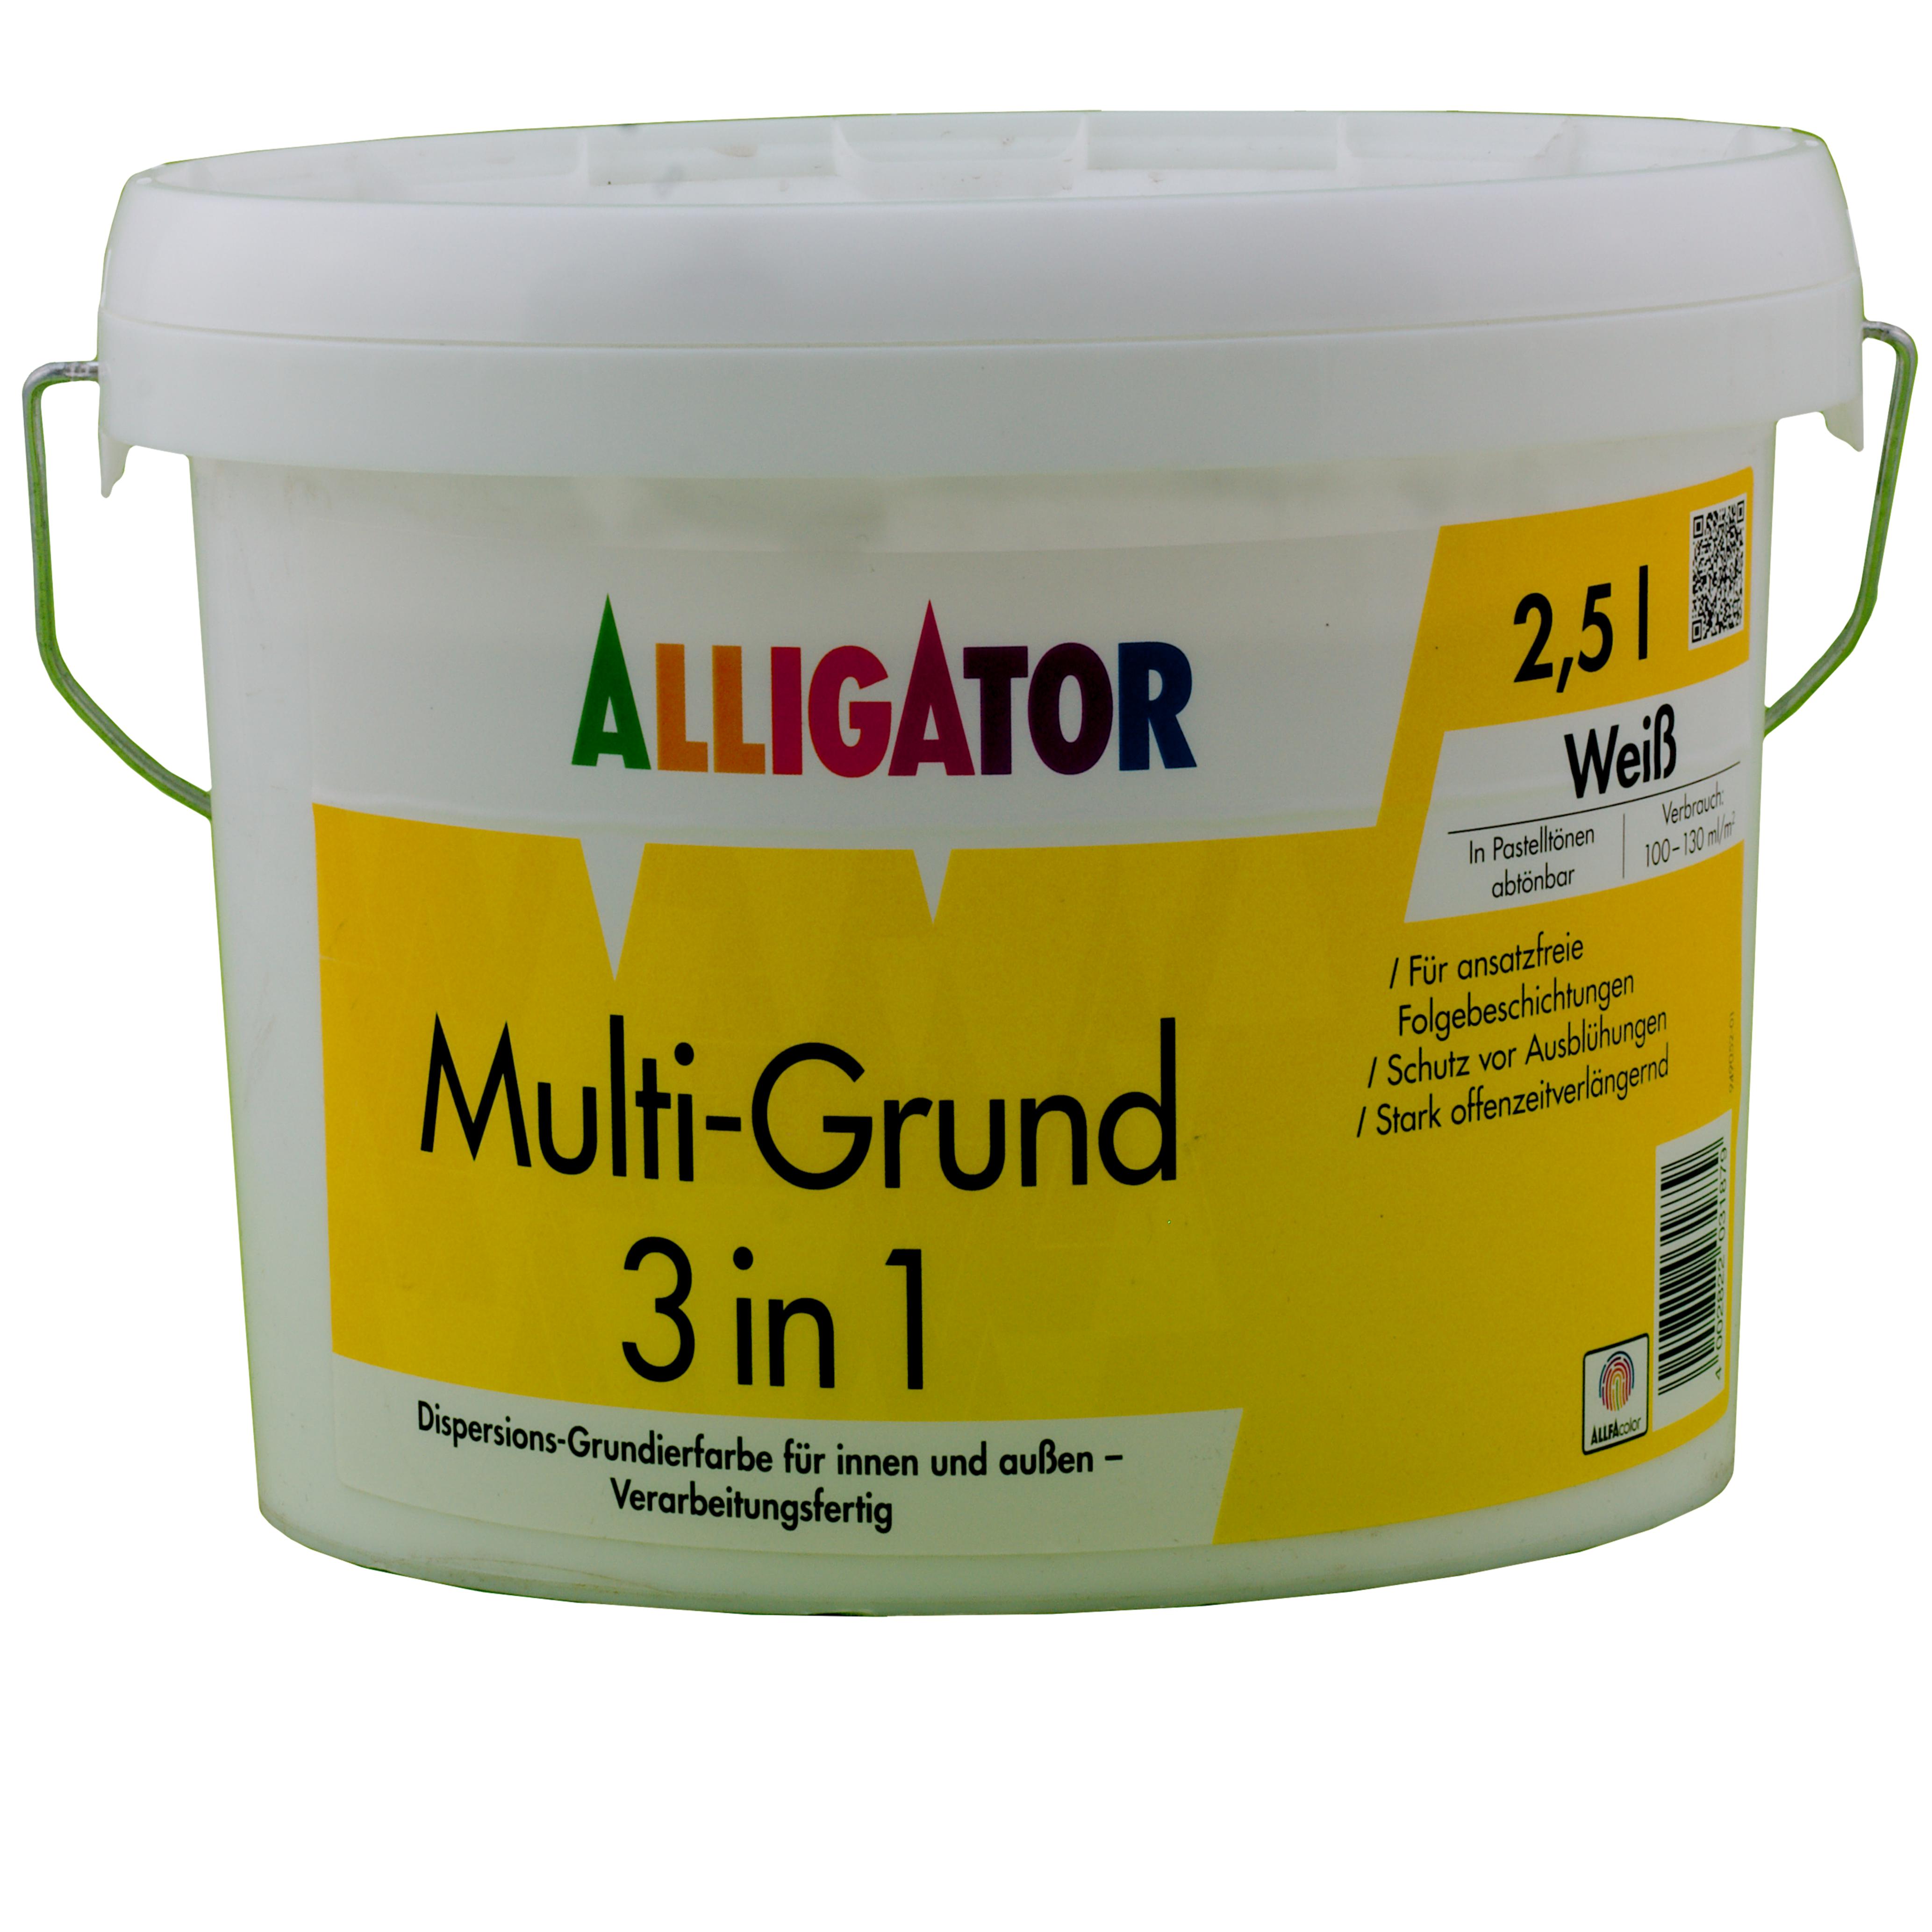 Alligator Multi-Grund 3 in 1 LEF weiß  2,5 ltr. 